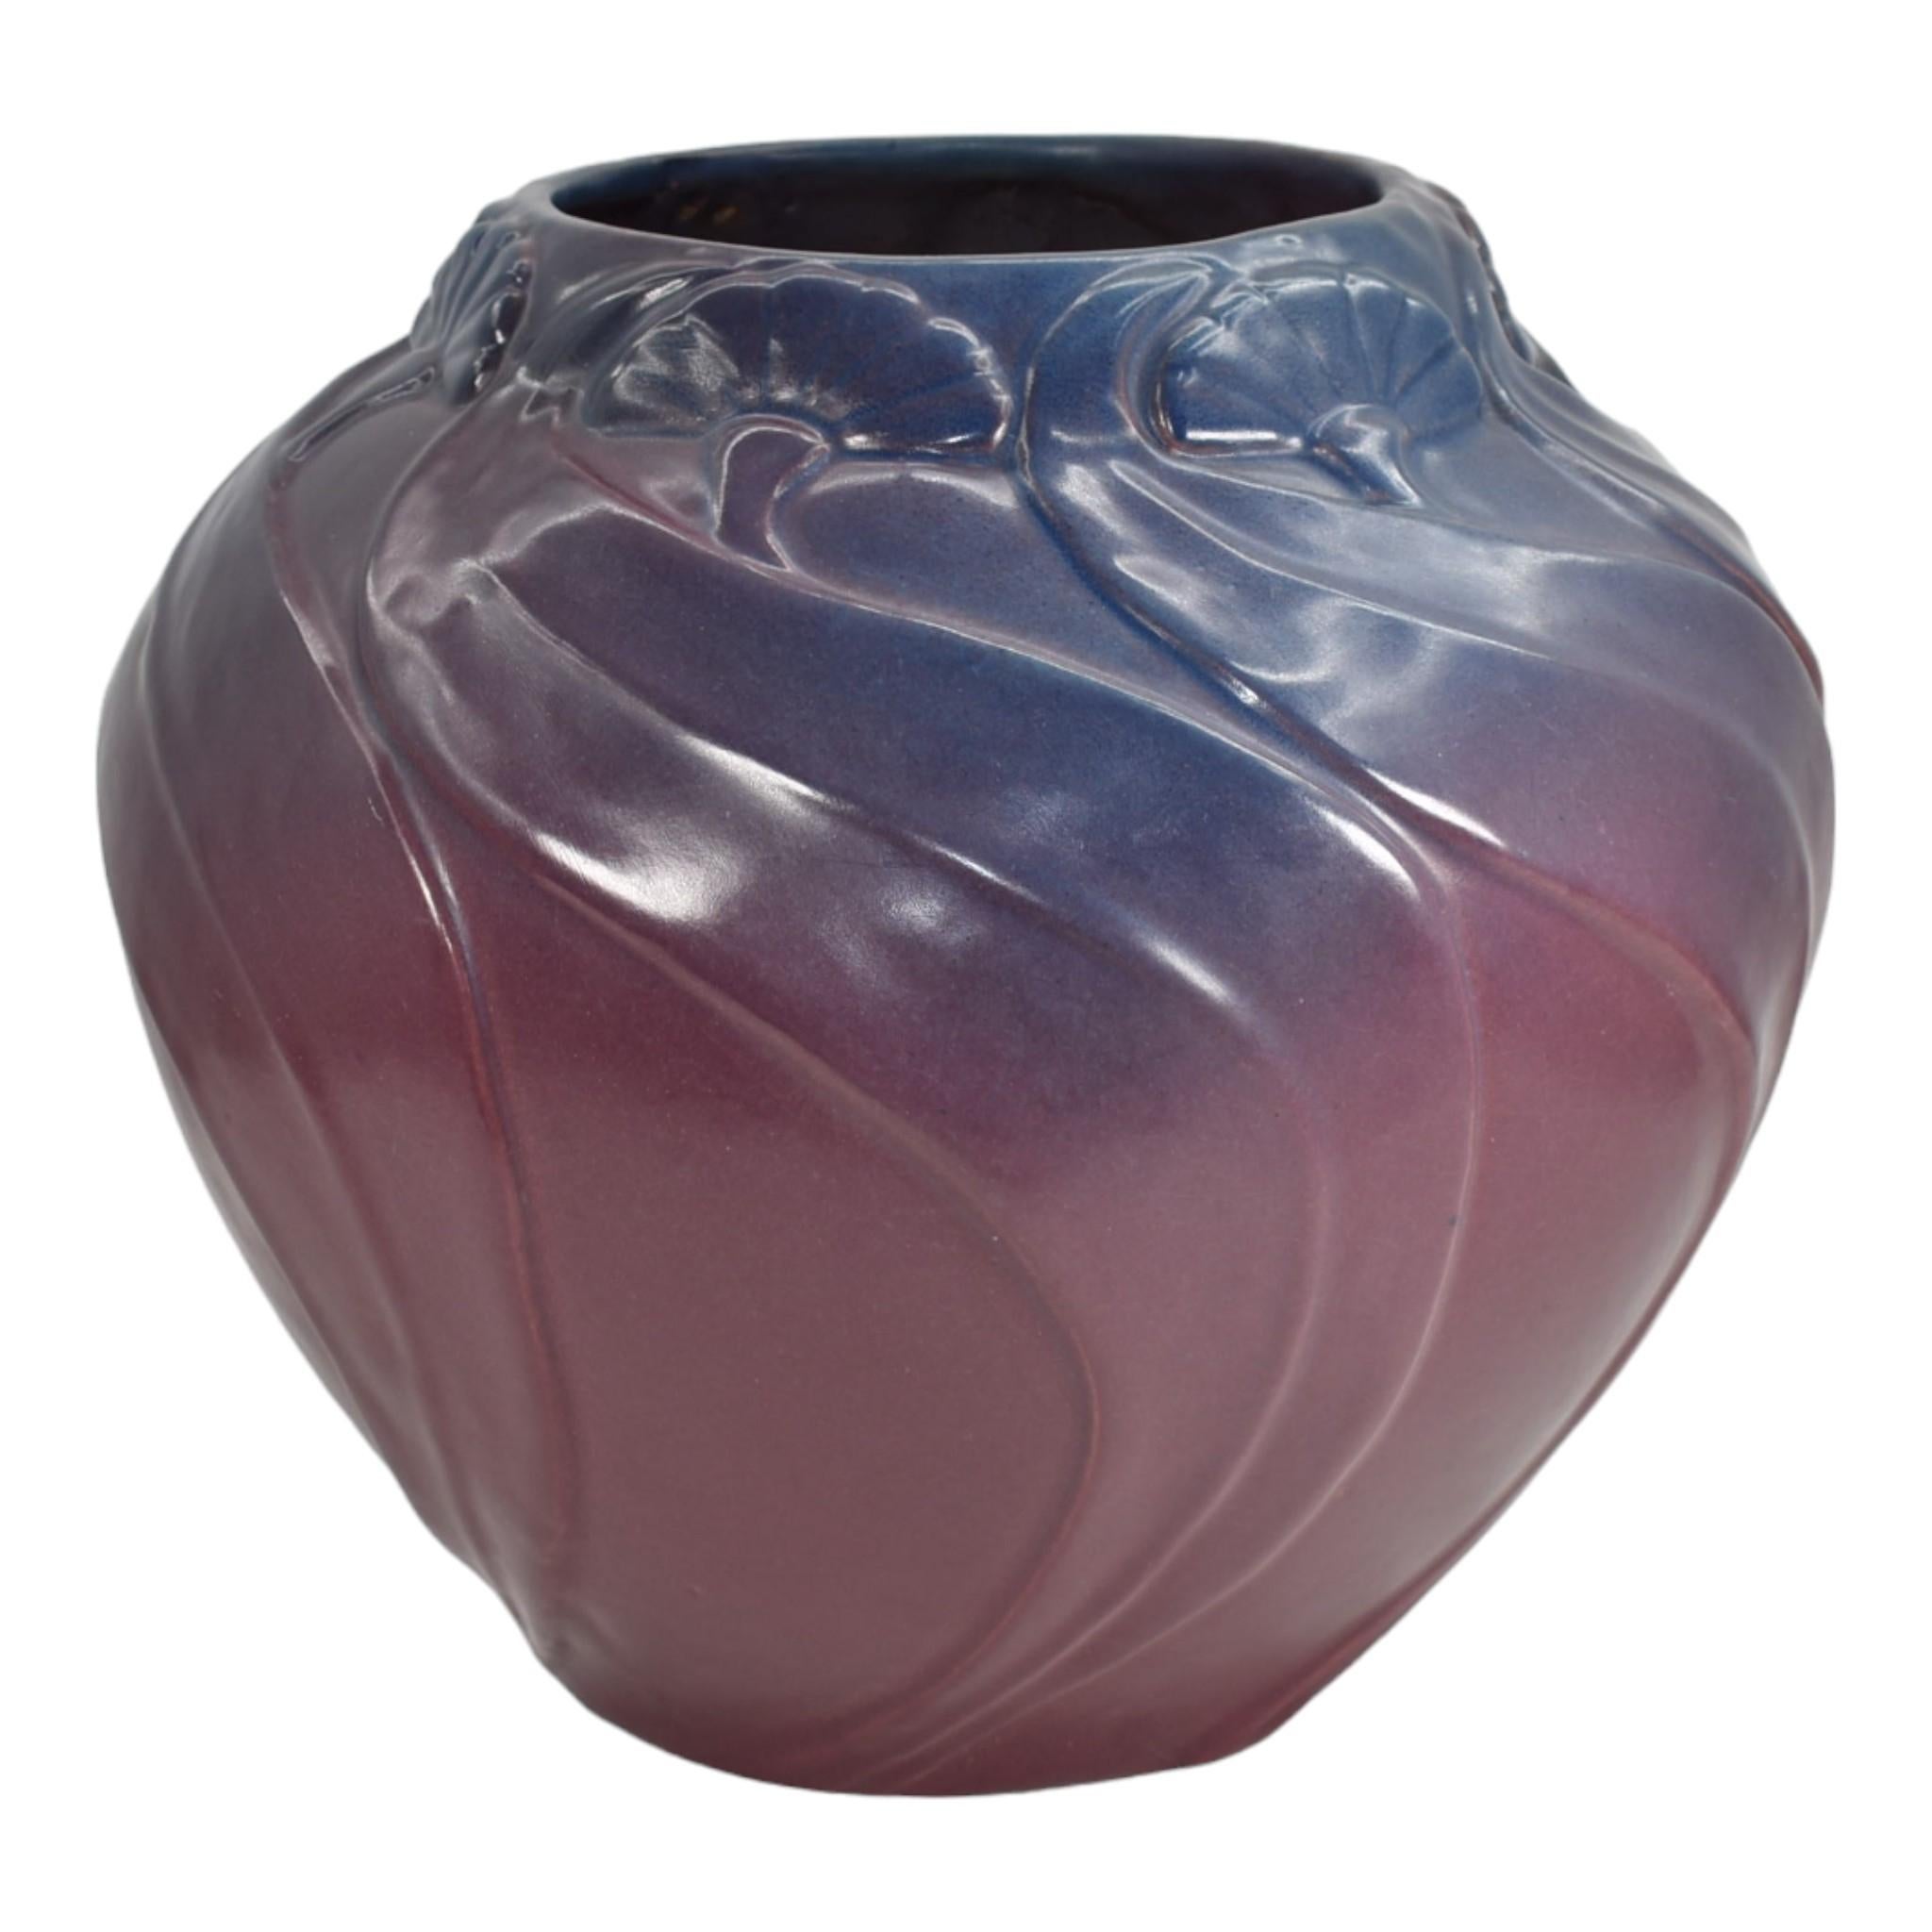 Van Briggle 1915 Vintage Arts And Crafts Pottery Mulberry Ceramic Vase 767
Vase massif et magnifique avec des feuilles et des fleurs tourbillonnantes.
Moule de qualité supérieure avec une couleur et une glaçure magnifiques.
Excellent état d'origine.